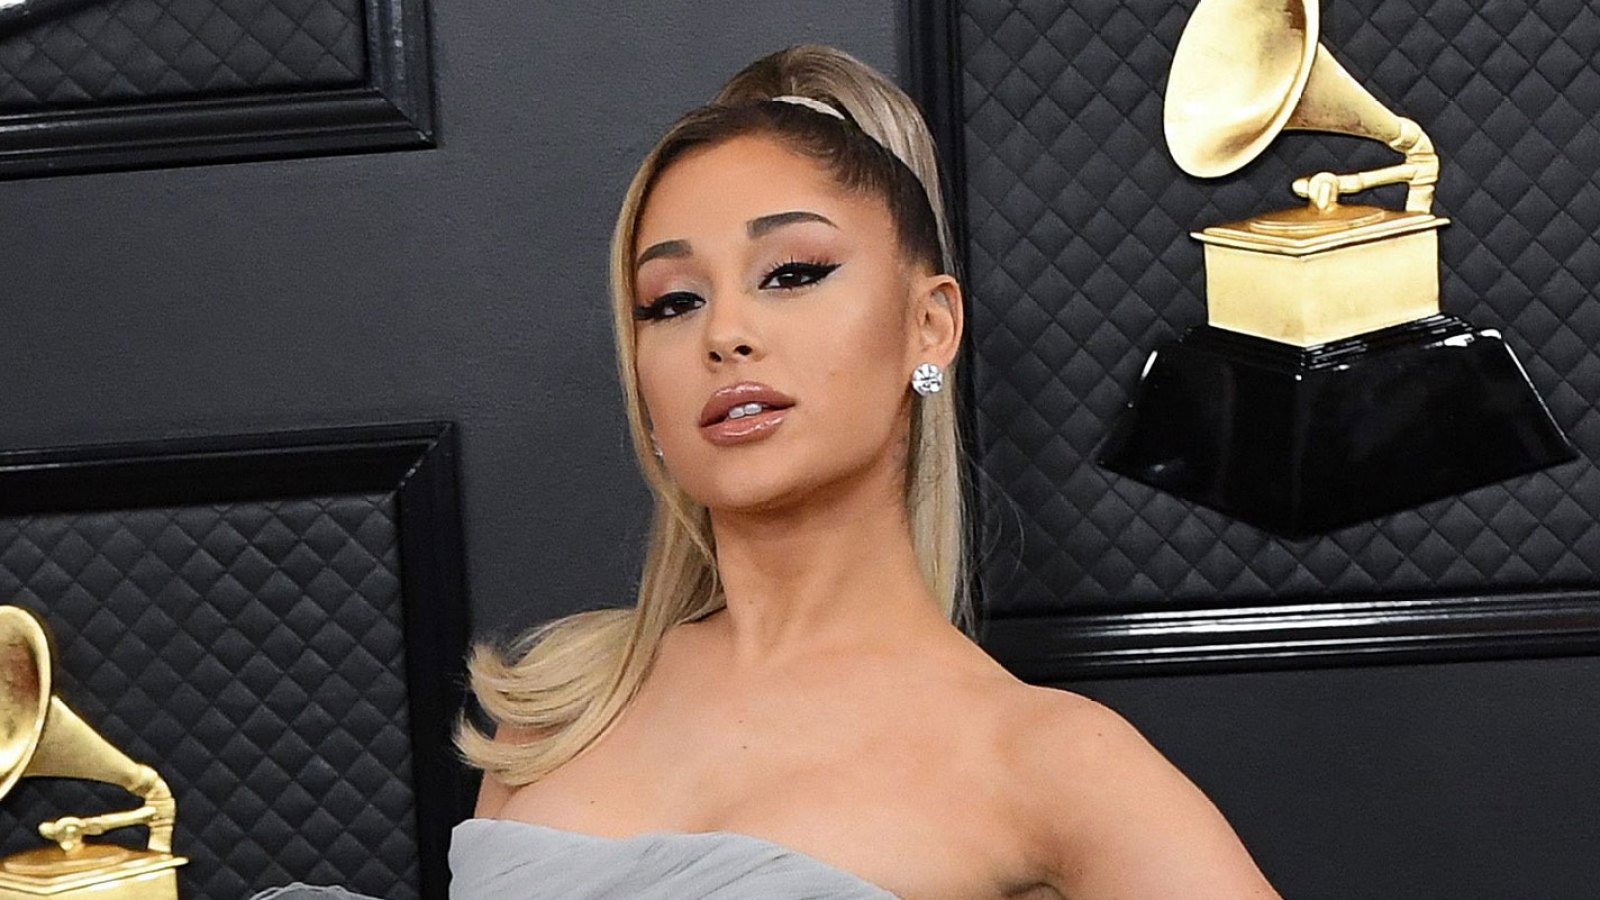 Ariana Grande Porn Caption Spank - Grammys 2022: Ariana Grande Skips Awards Show Amid 3 Nominations